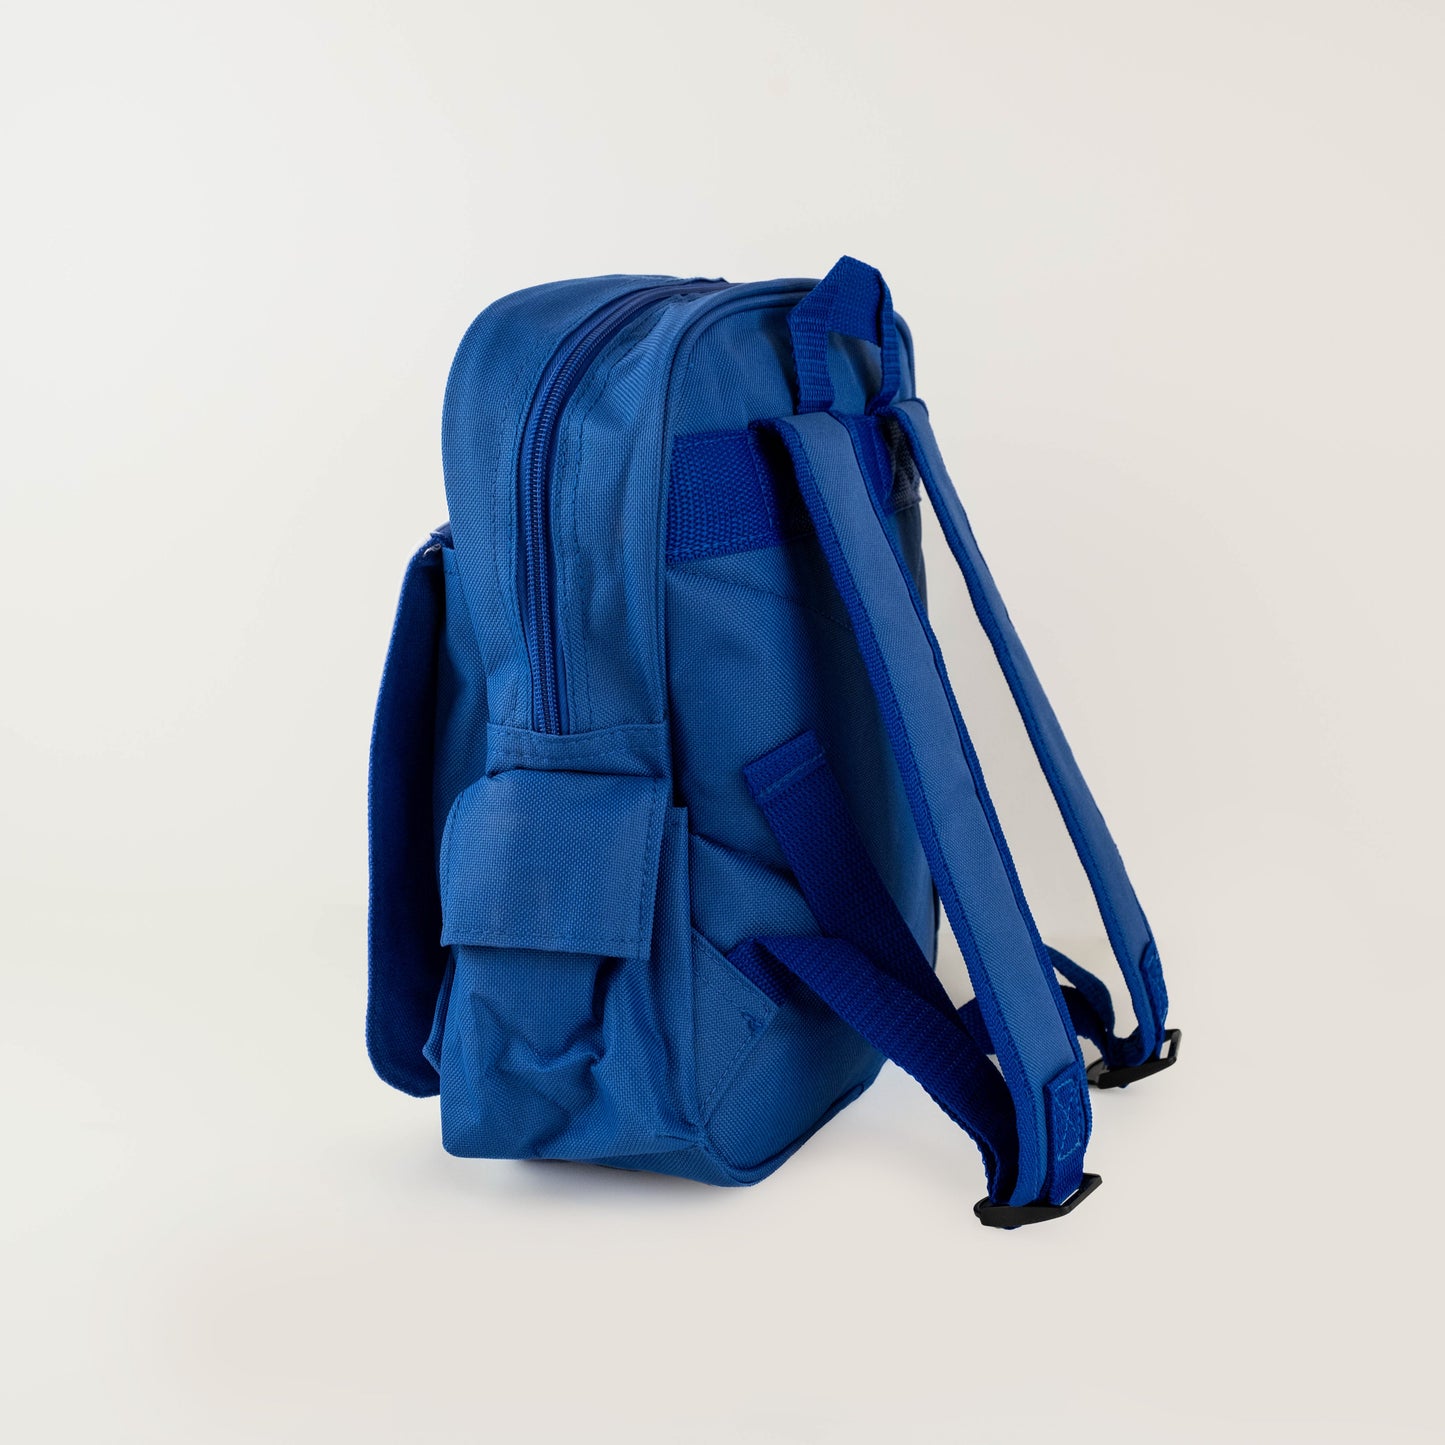 Children’s Personalised Backpack - Safari Design